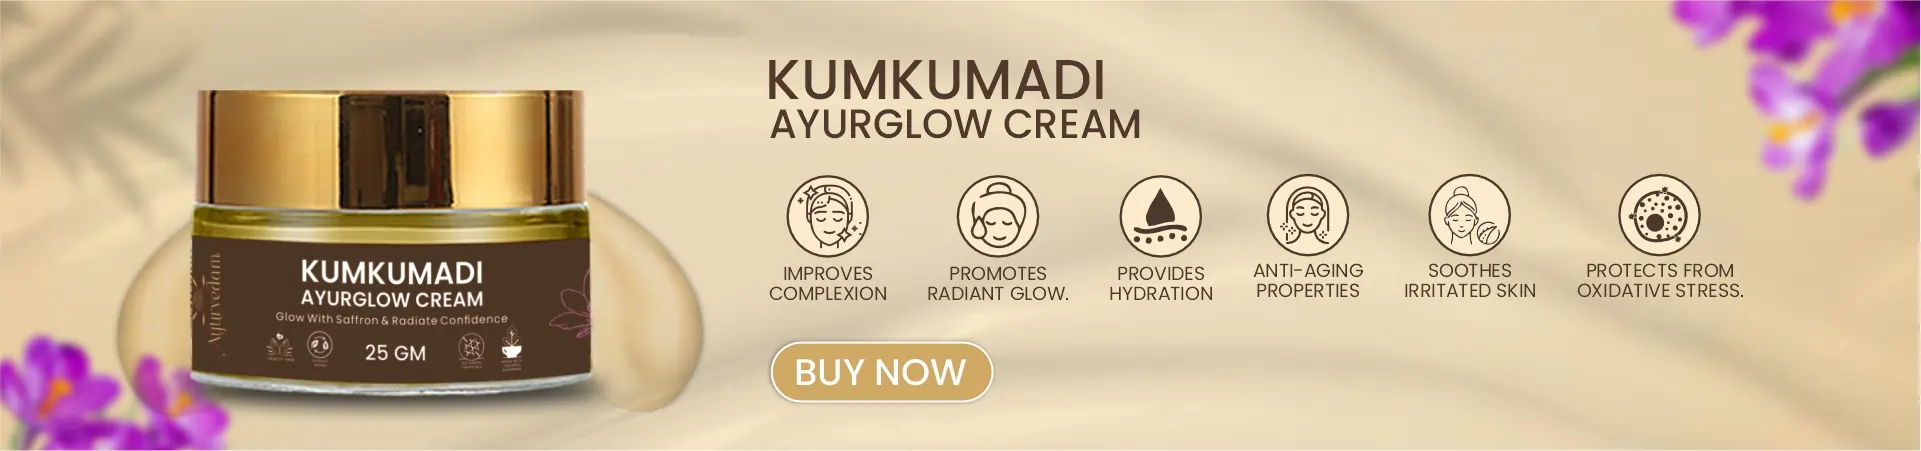 Benefits of Kumkumadi Ayurglow Cream by Ayurvedam